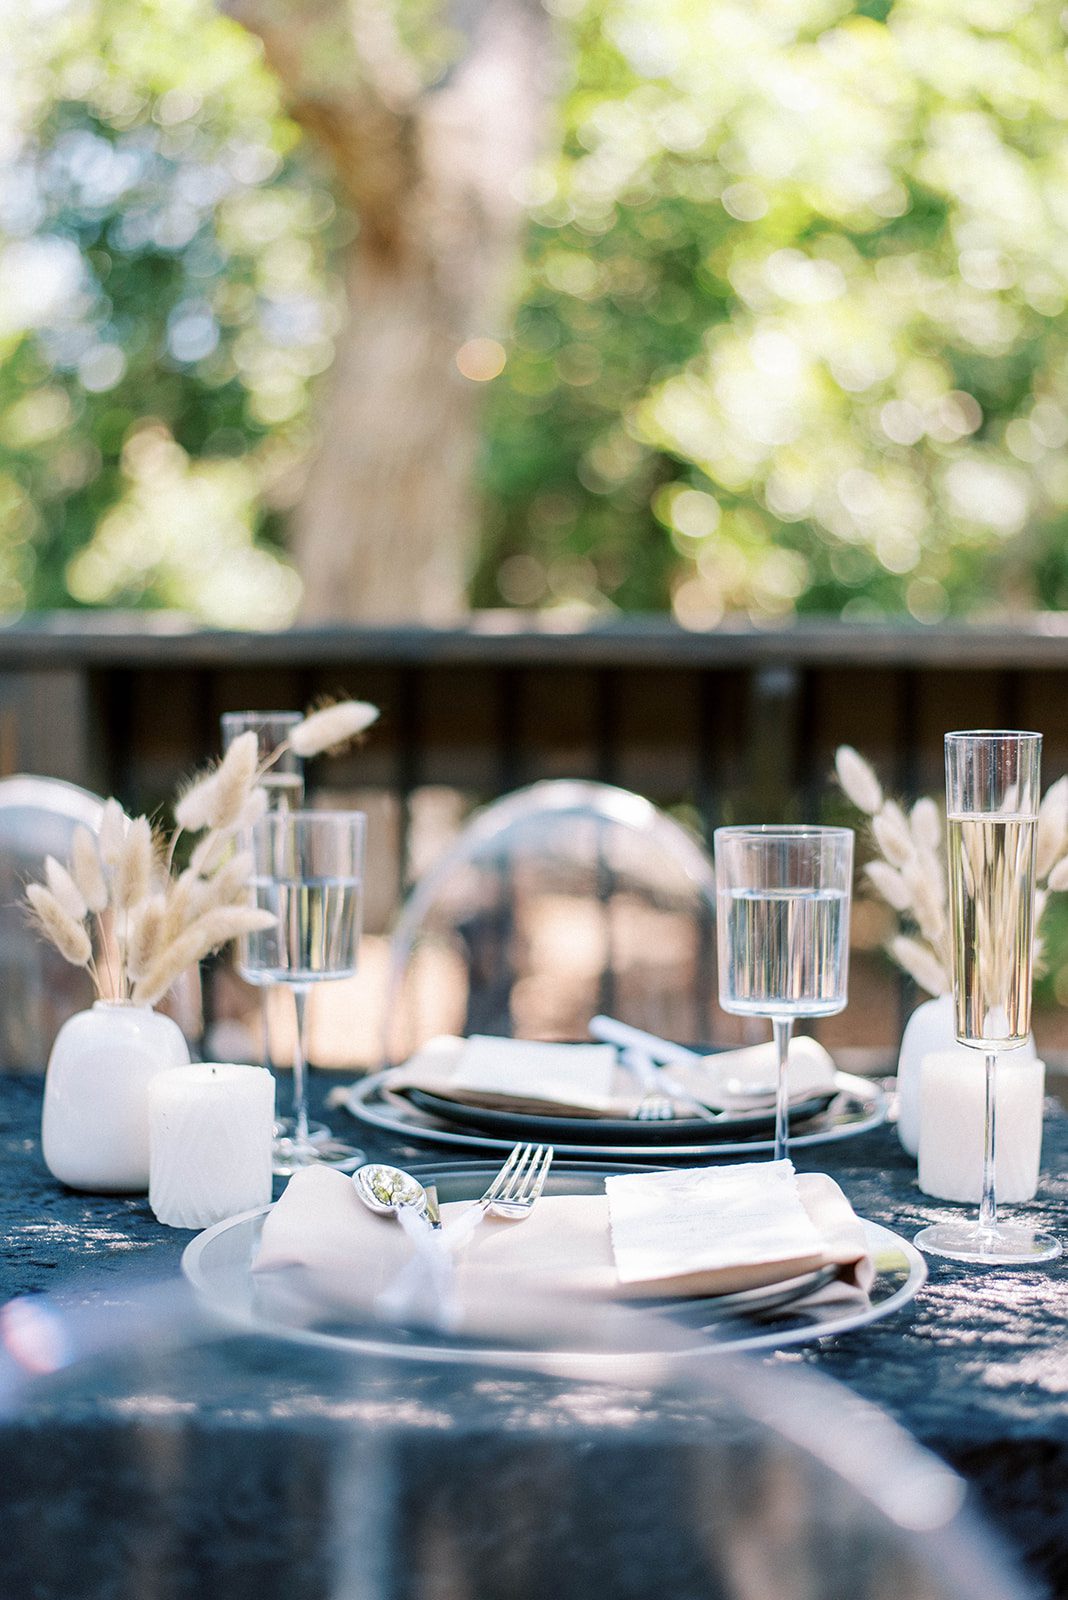 minimal wedding table settings and decor at Florida's Grand Ol' Barn